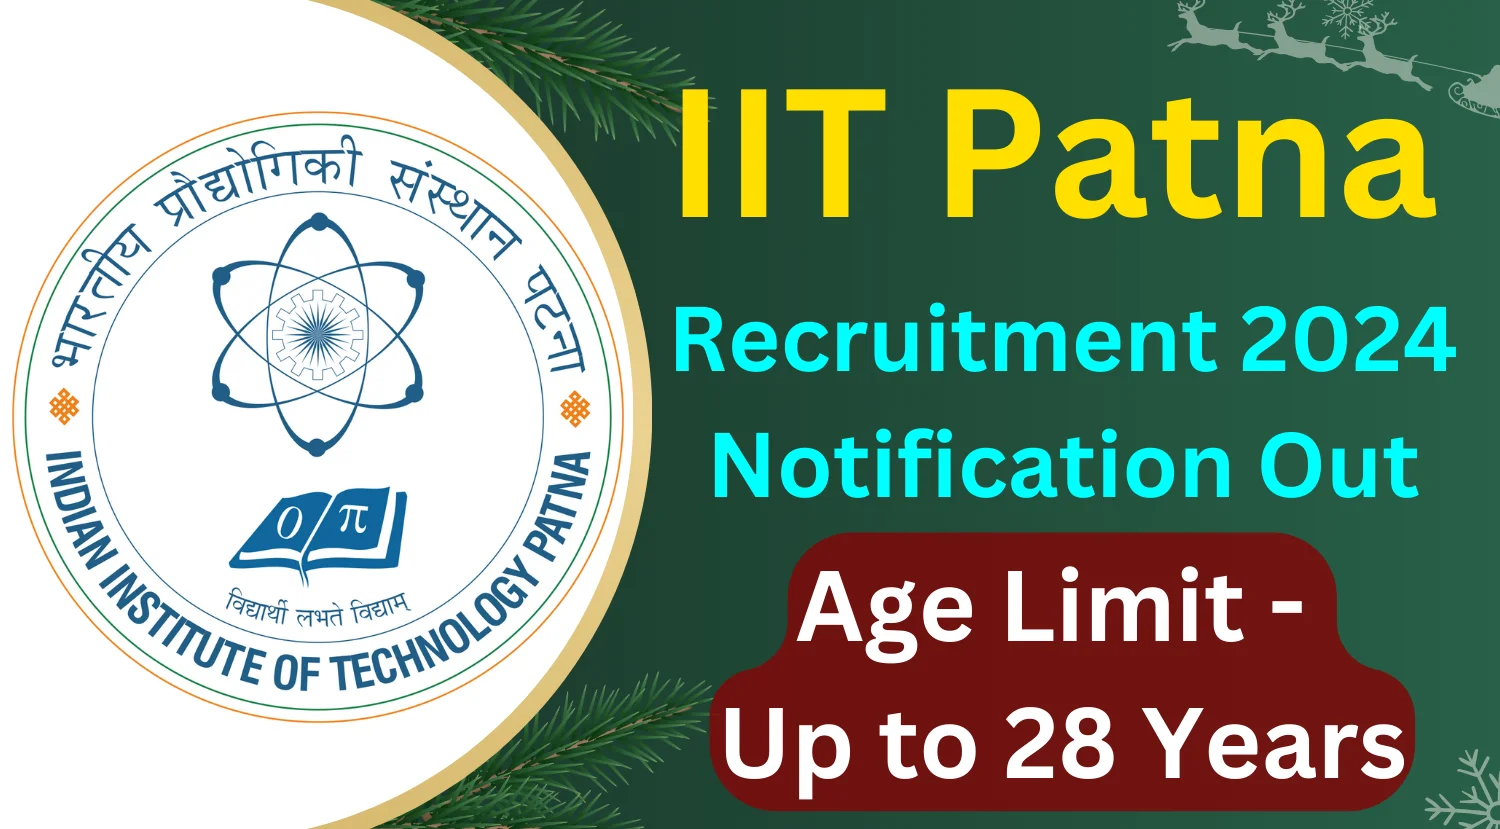 IIT Patna JRF Recruitment 2024 Notification